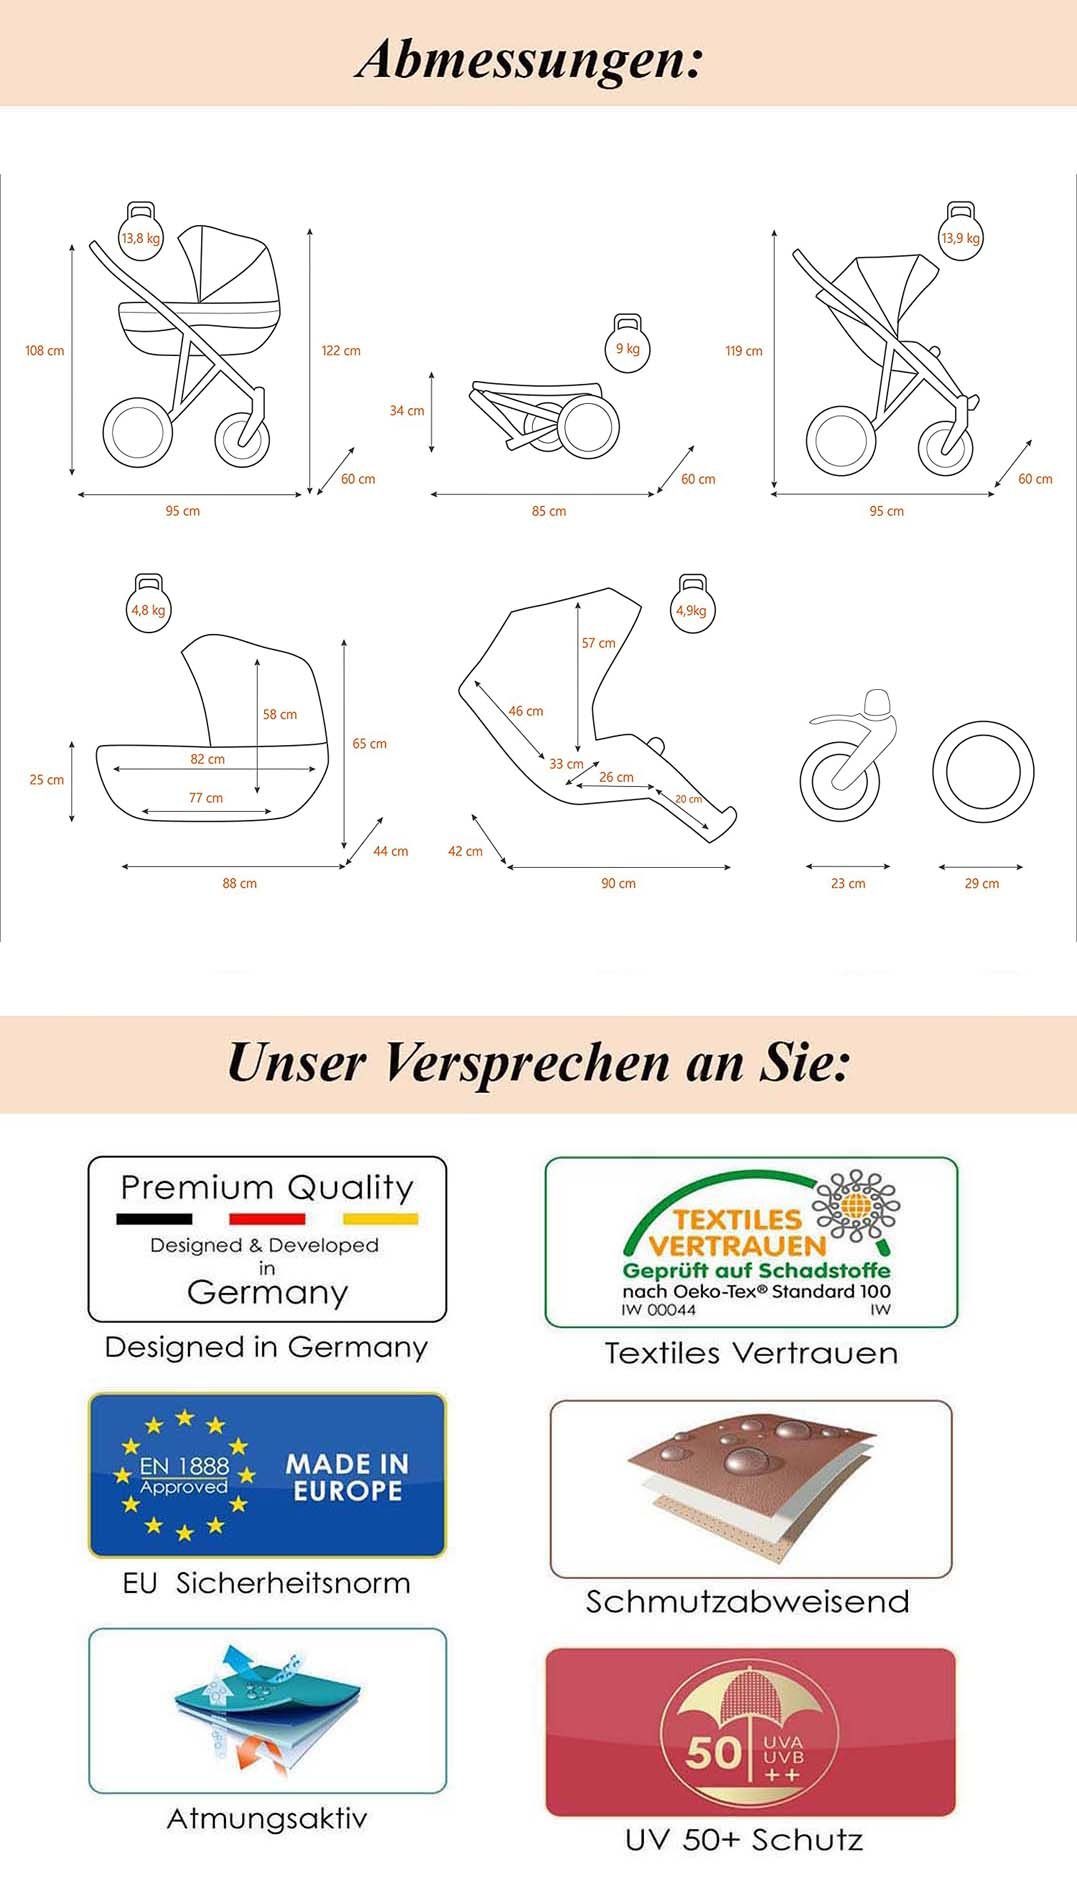 Farben - 1 3 Kinderwagen-Set Rosa-Bunt-Dekor - 12 in Teile babies-on-wheels 16 Vip in Kombi-Kinderwagen Lux